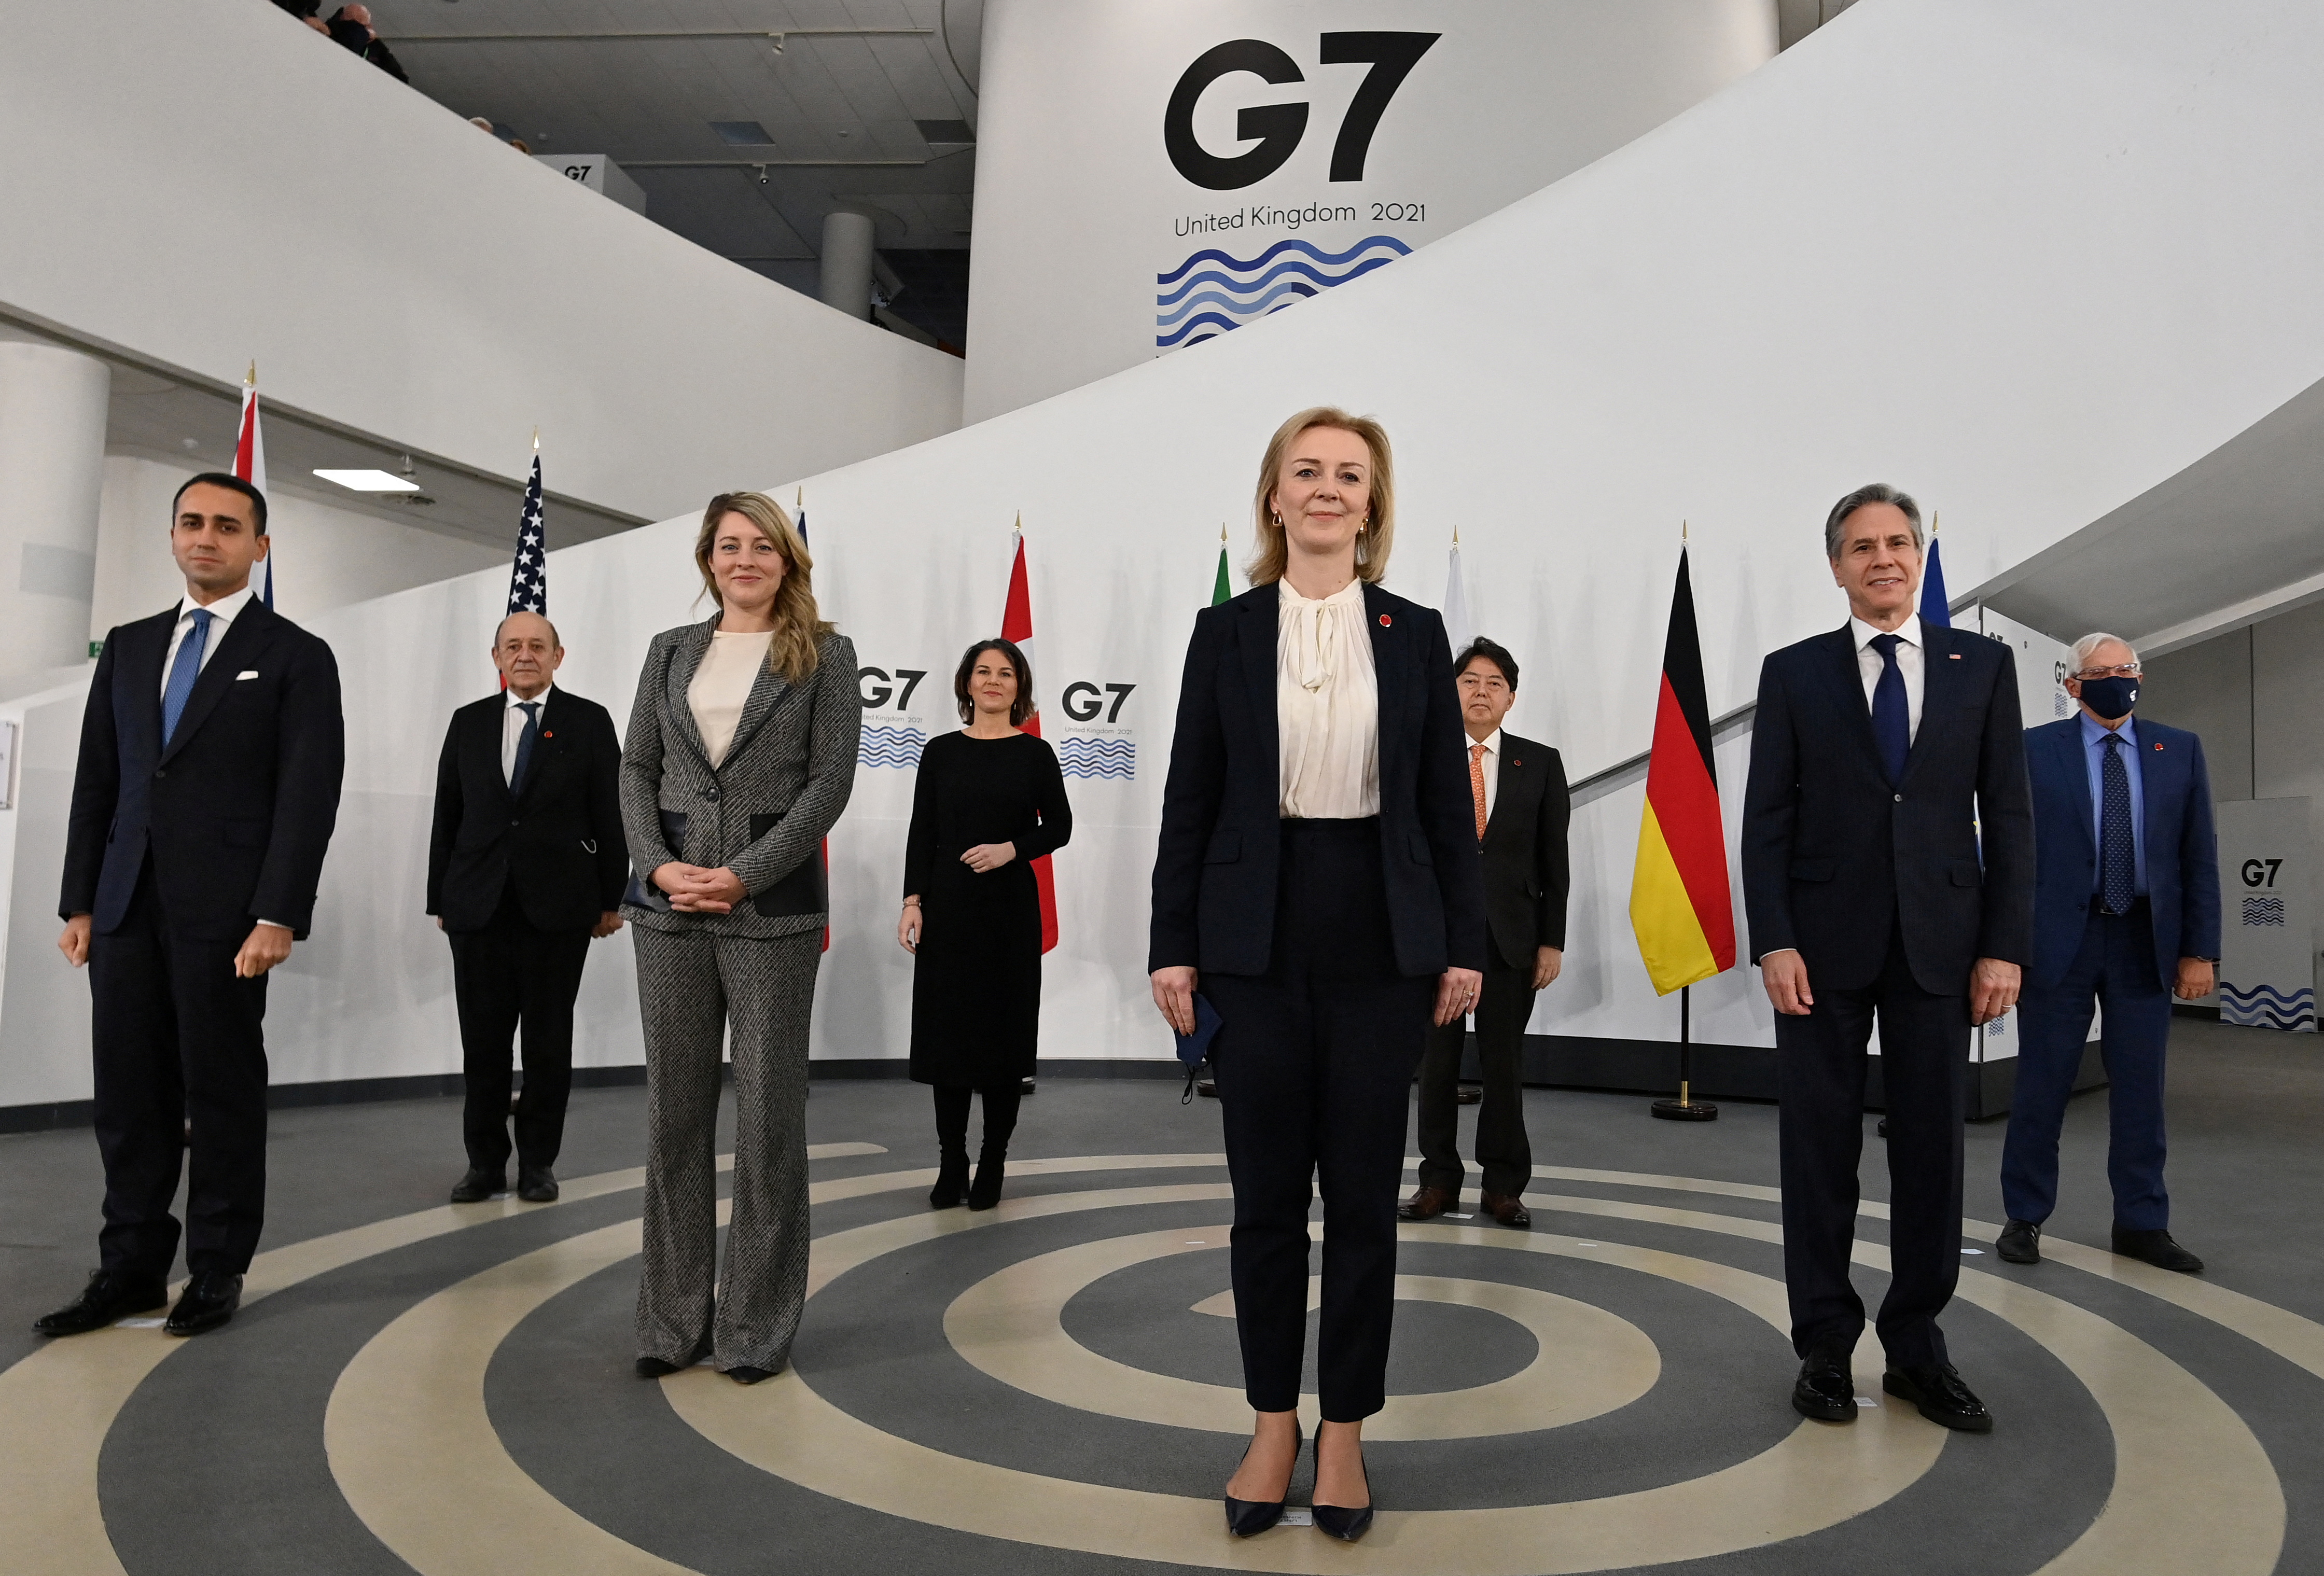 Cumbre de ministros de Asuntos Exteriores y Desarrollo del G7 en Liverpool, Gran Bretaña, el 11 de diciembre de 2021. Paul Ellis/Pool vía REUTERS

